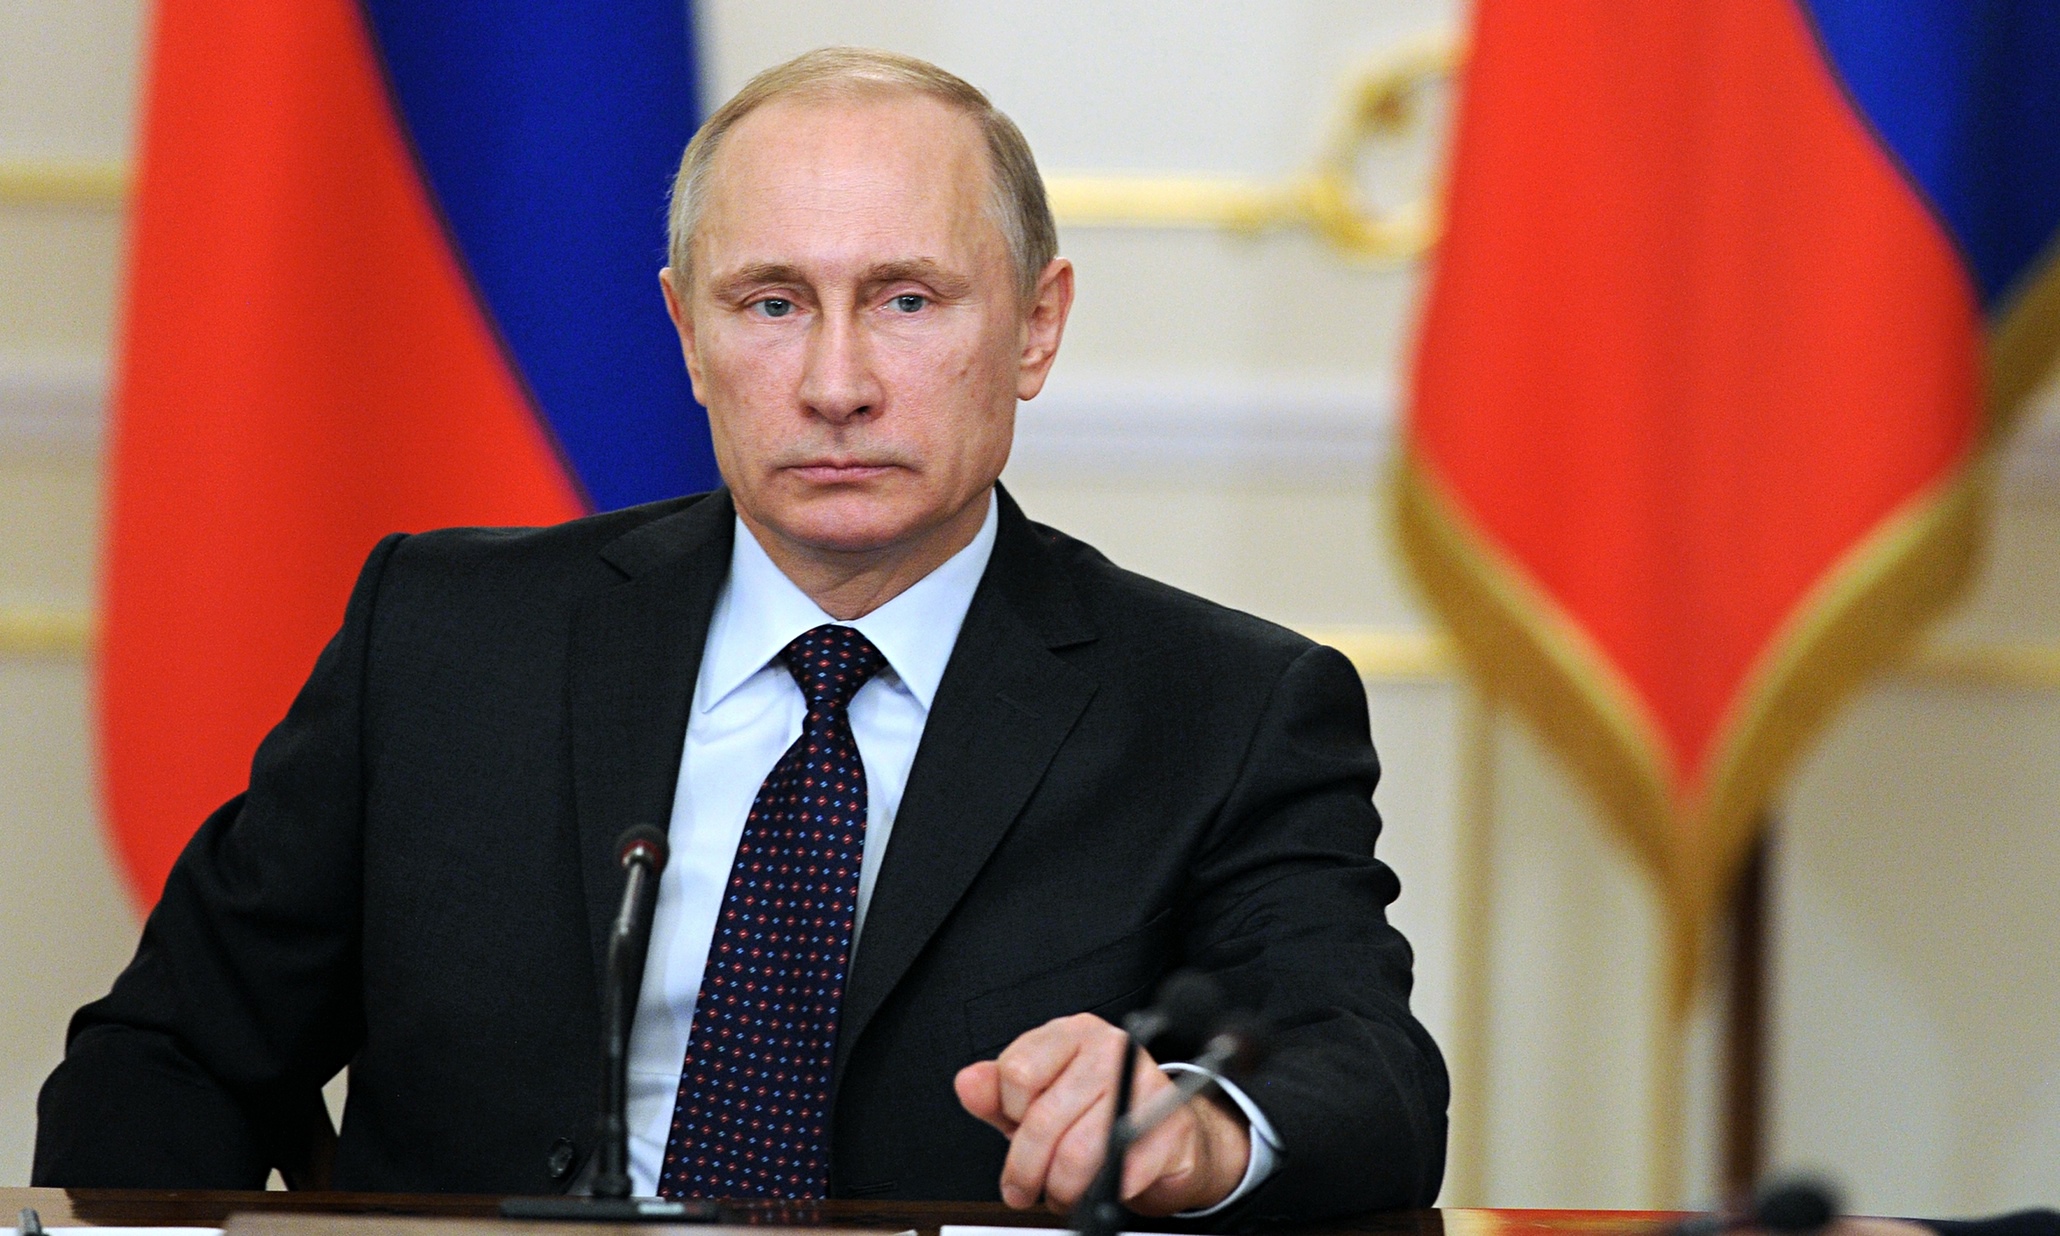 Ο Β.Πούτιν επιβεβαιώνει τη διάρρηξη των ελληνορωσικών διπλωματικών σχέσεων αλλά… «Θα αναγεννηθούν όμως κάποτε»